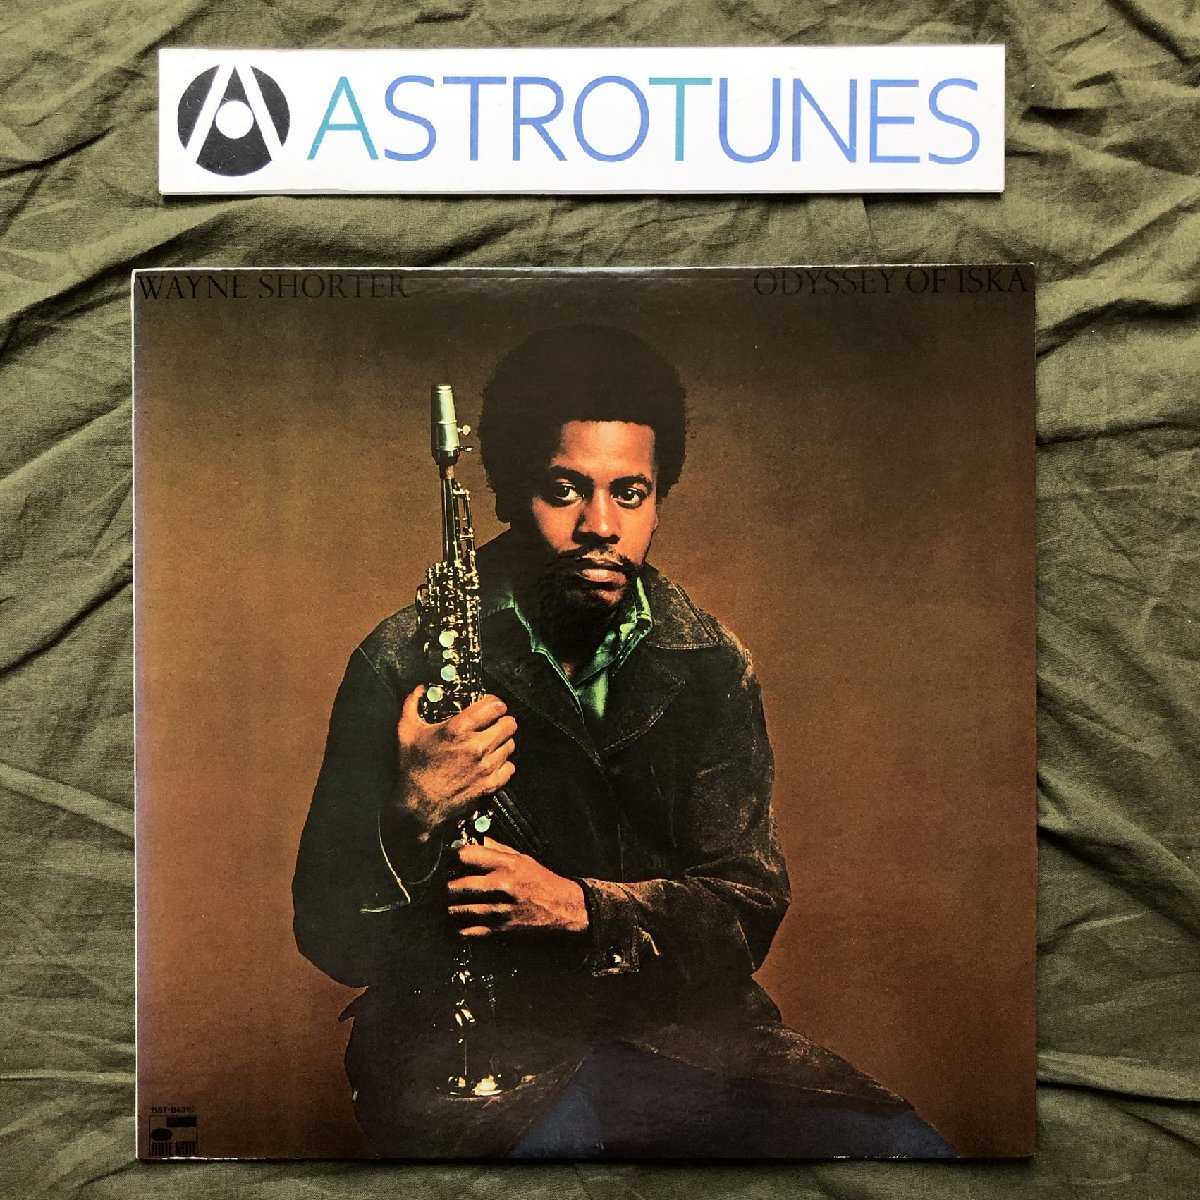 原信夫Collection 美盤 良ジャケ 1971年 米国オリジナルリリース盤 ウェイン・ショーター Wayne Shorter LPレコード Odyssey Of Iska_画像1